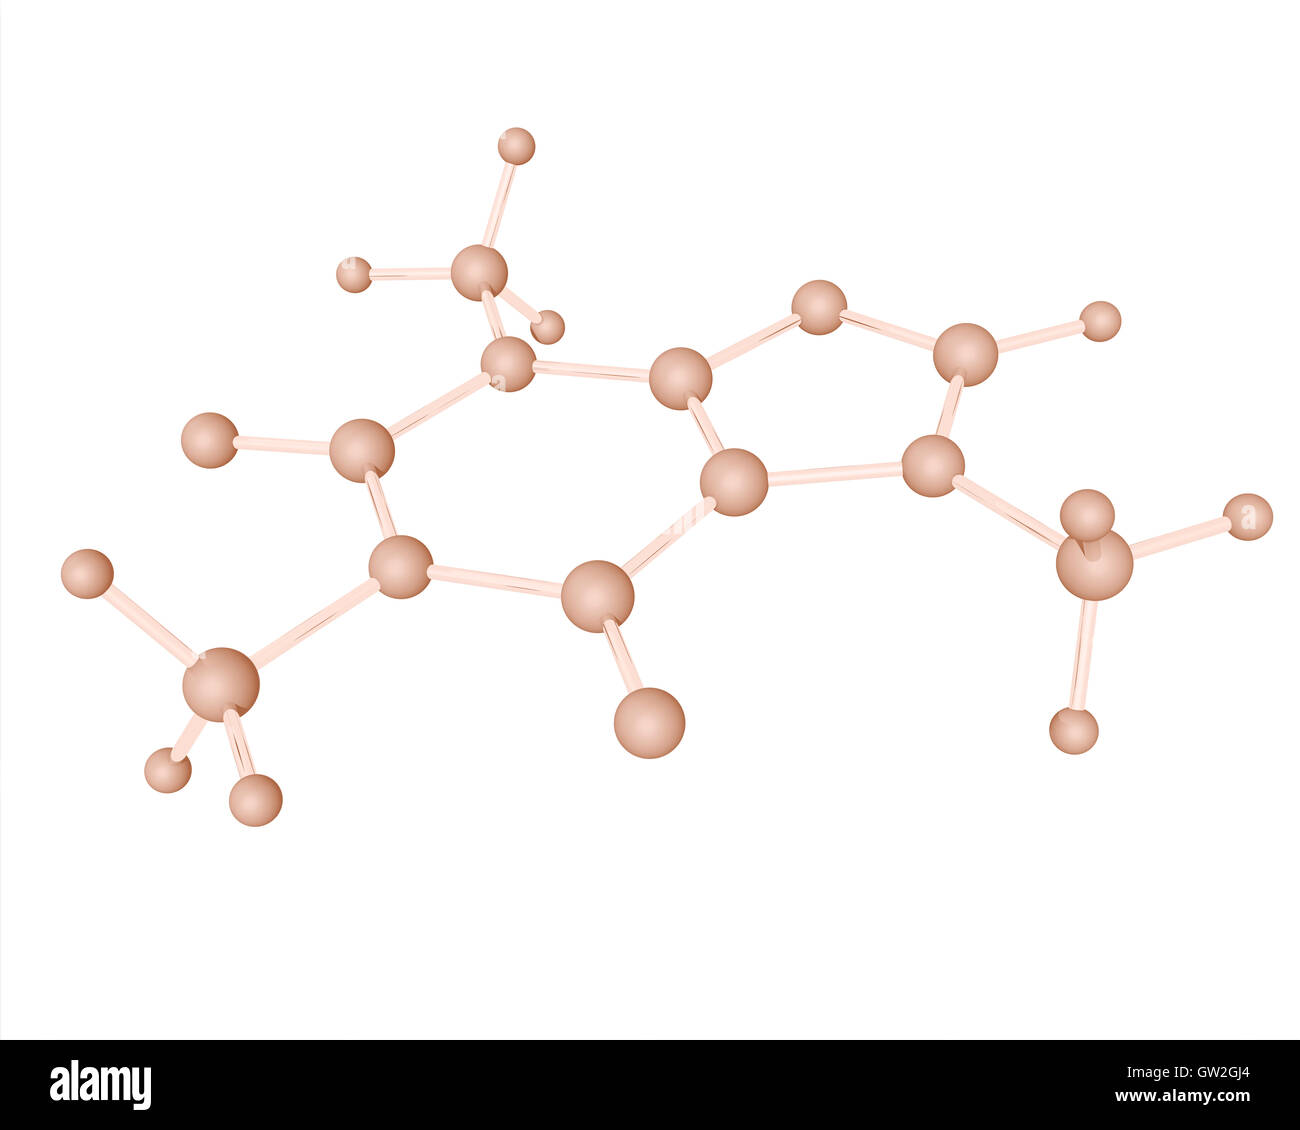 3D Le modèle moléculaire de la caféine, un stimulant du système nerveux central (SNC) de la classe de méthylxanthine. Banque D'Images